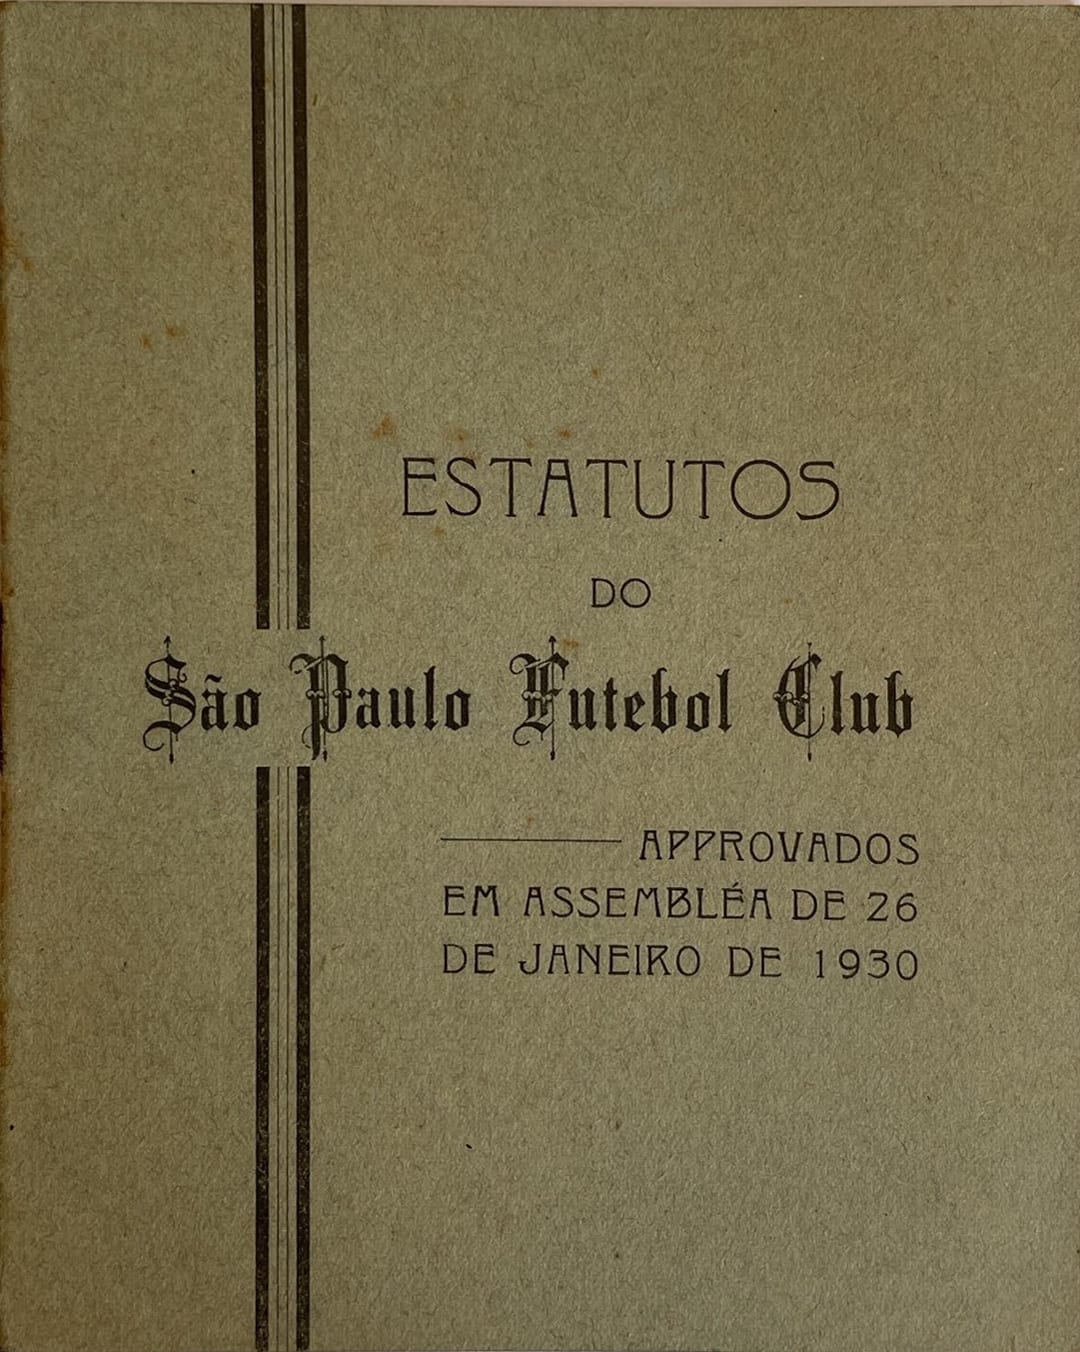 80 anos da reafirmação do nome São Paulo Futebol Clube - SPFC